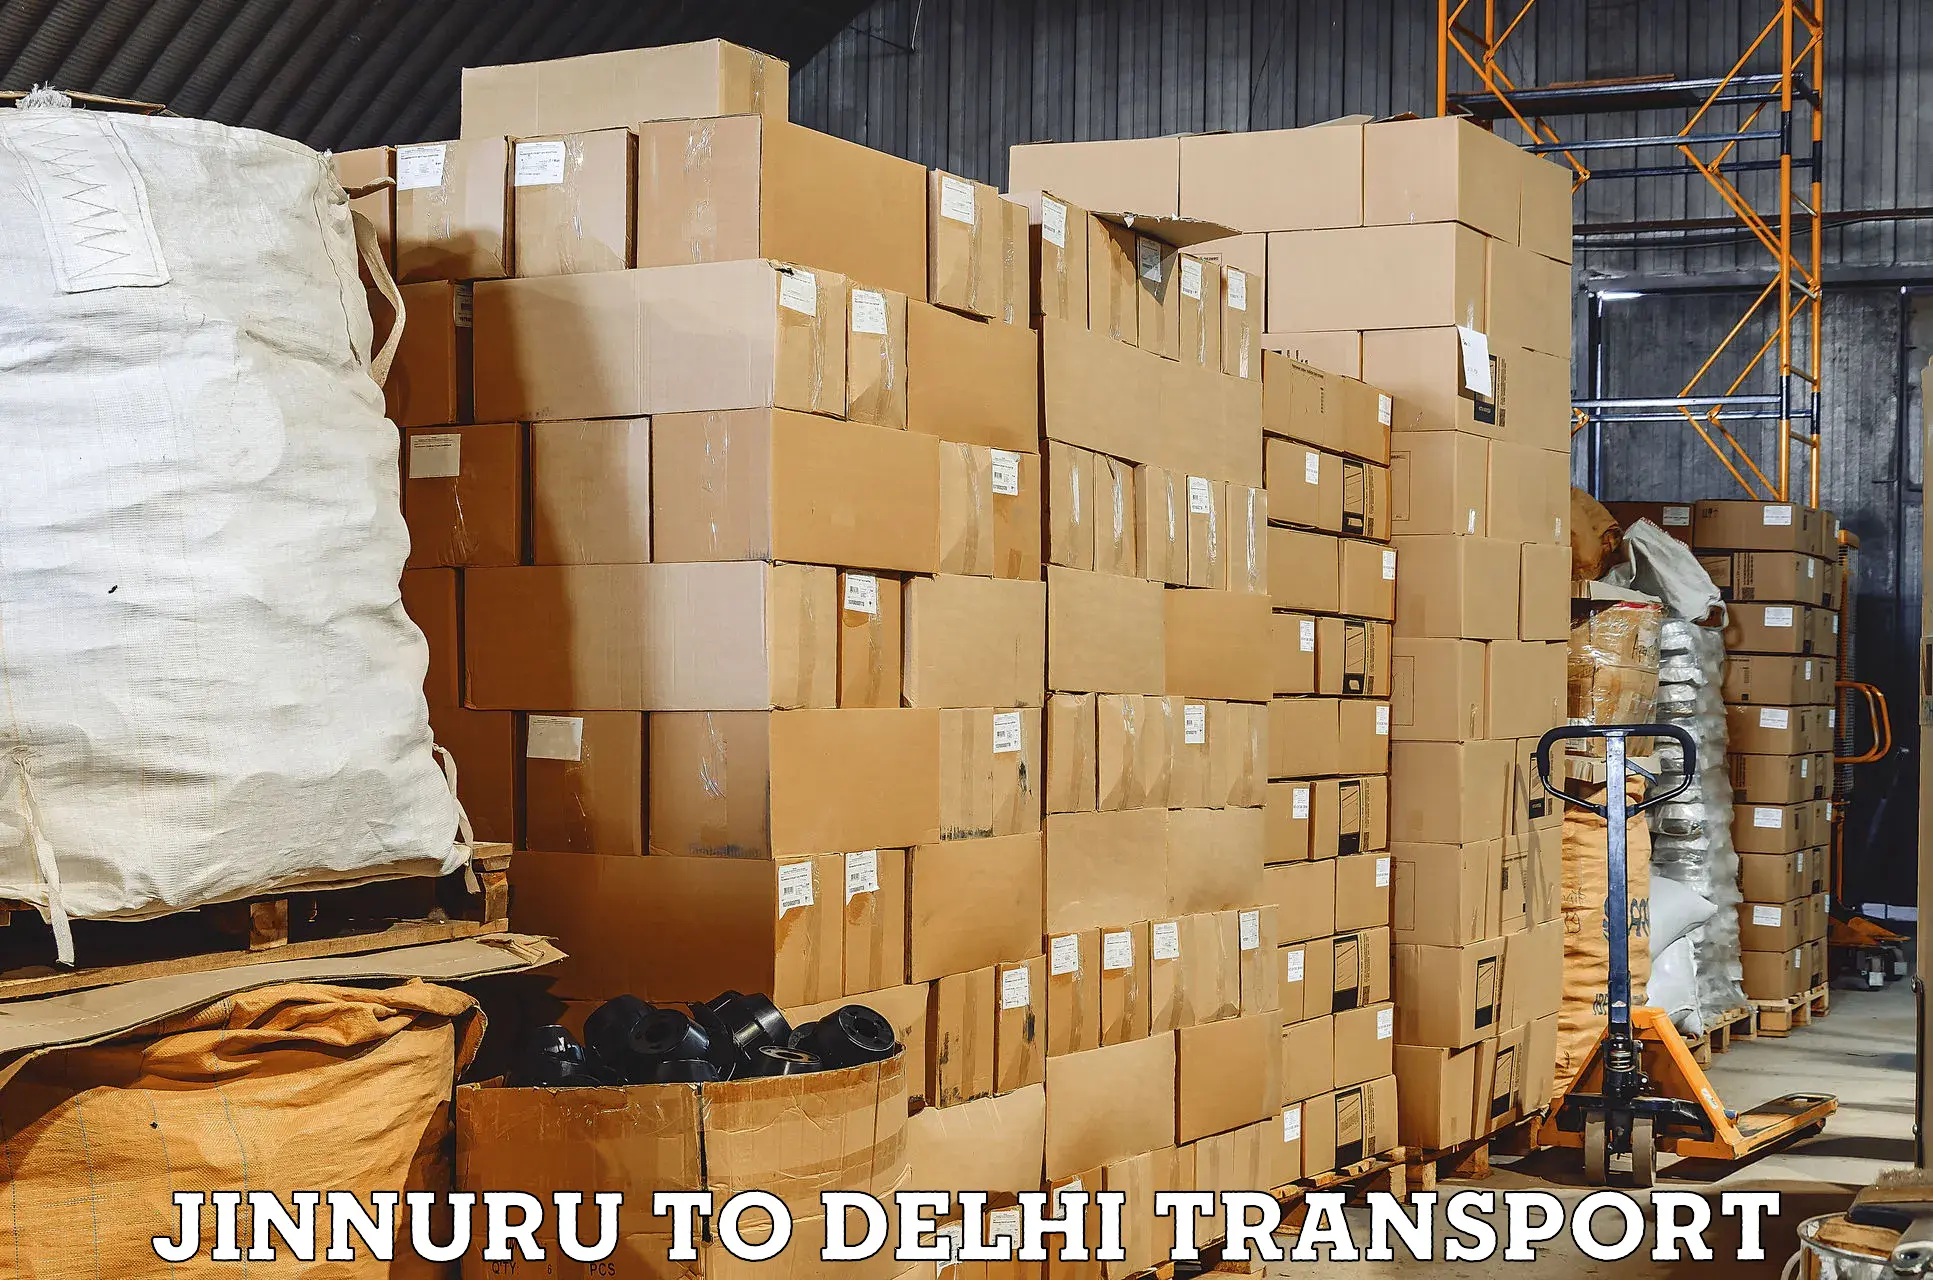 Truck transport companies in India Jinnuru to Naraina Industrial Estate